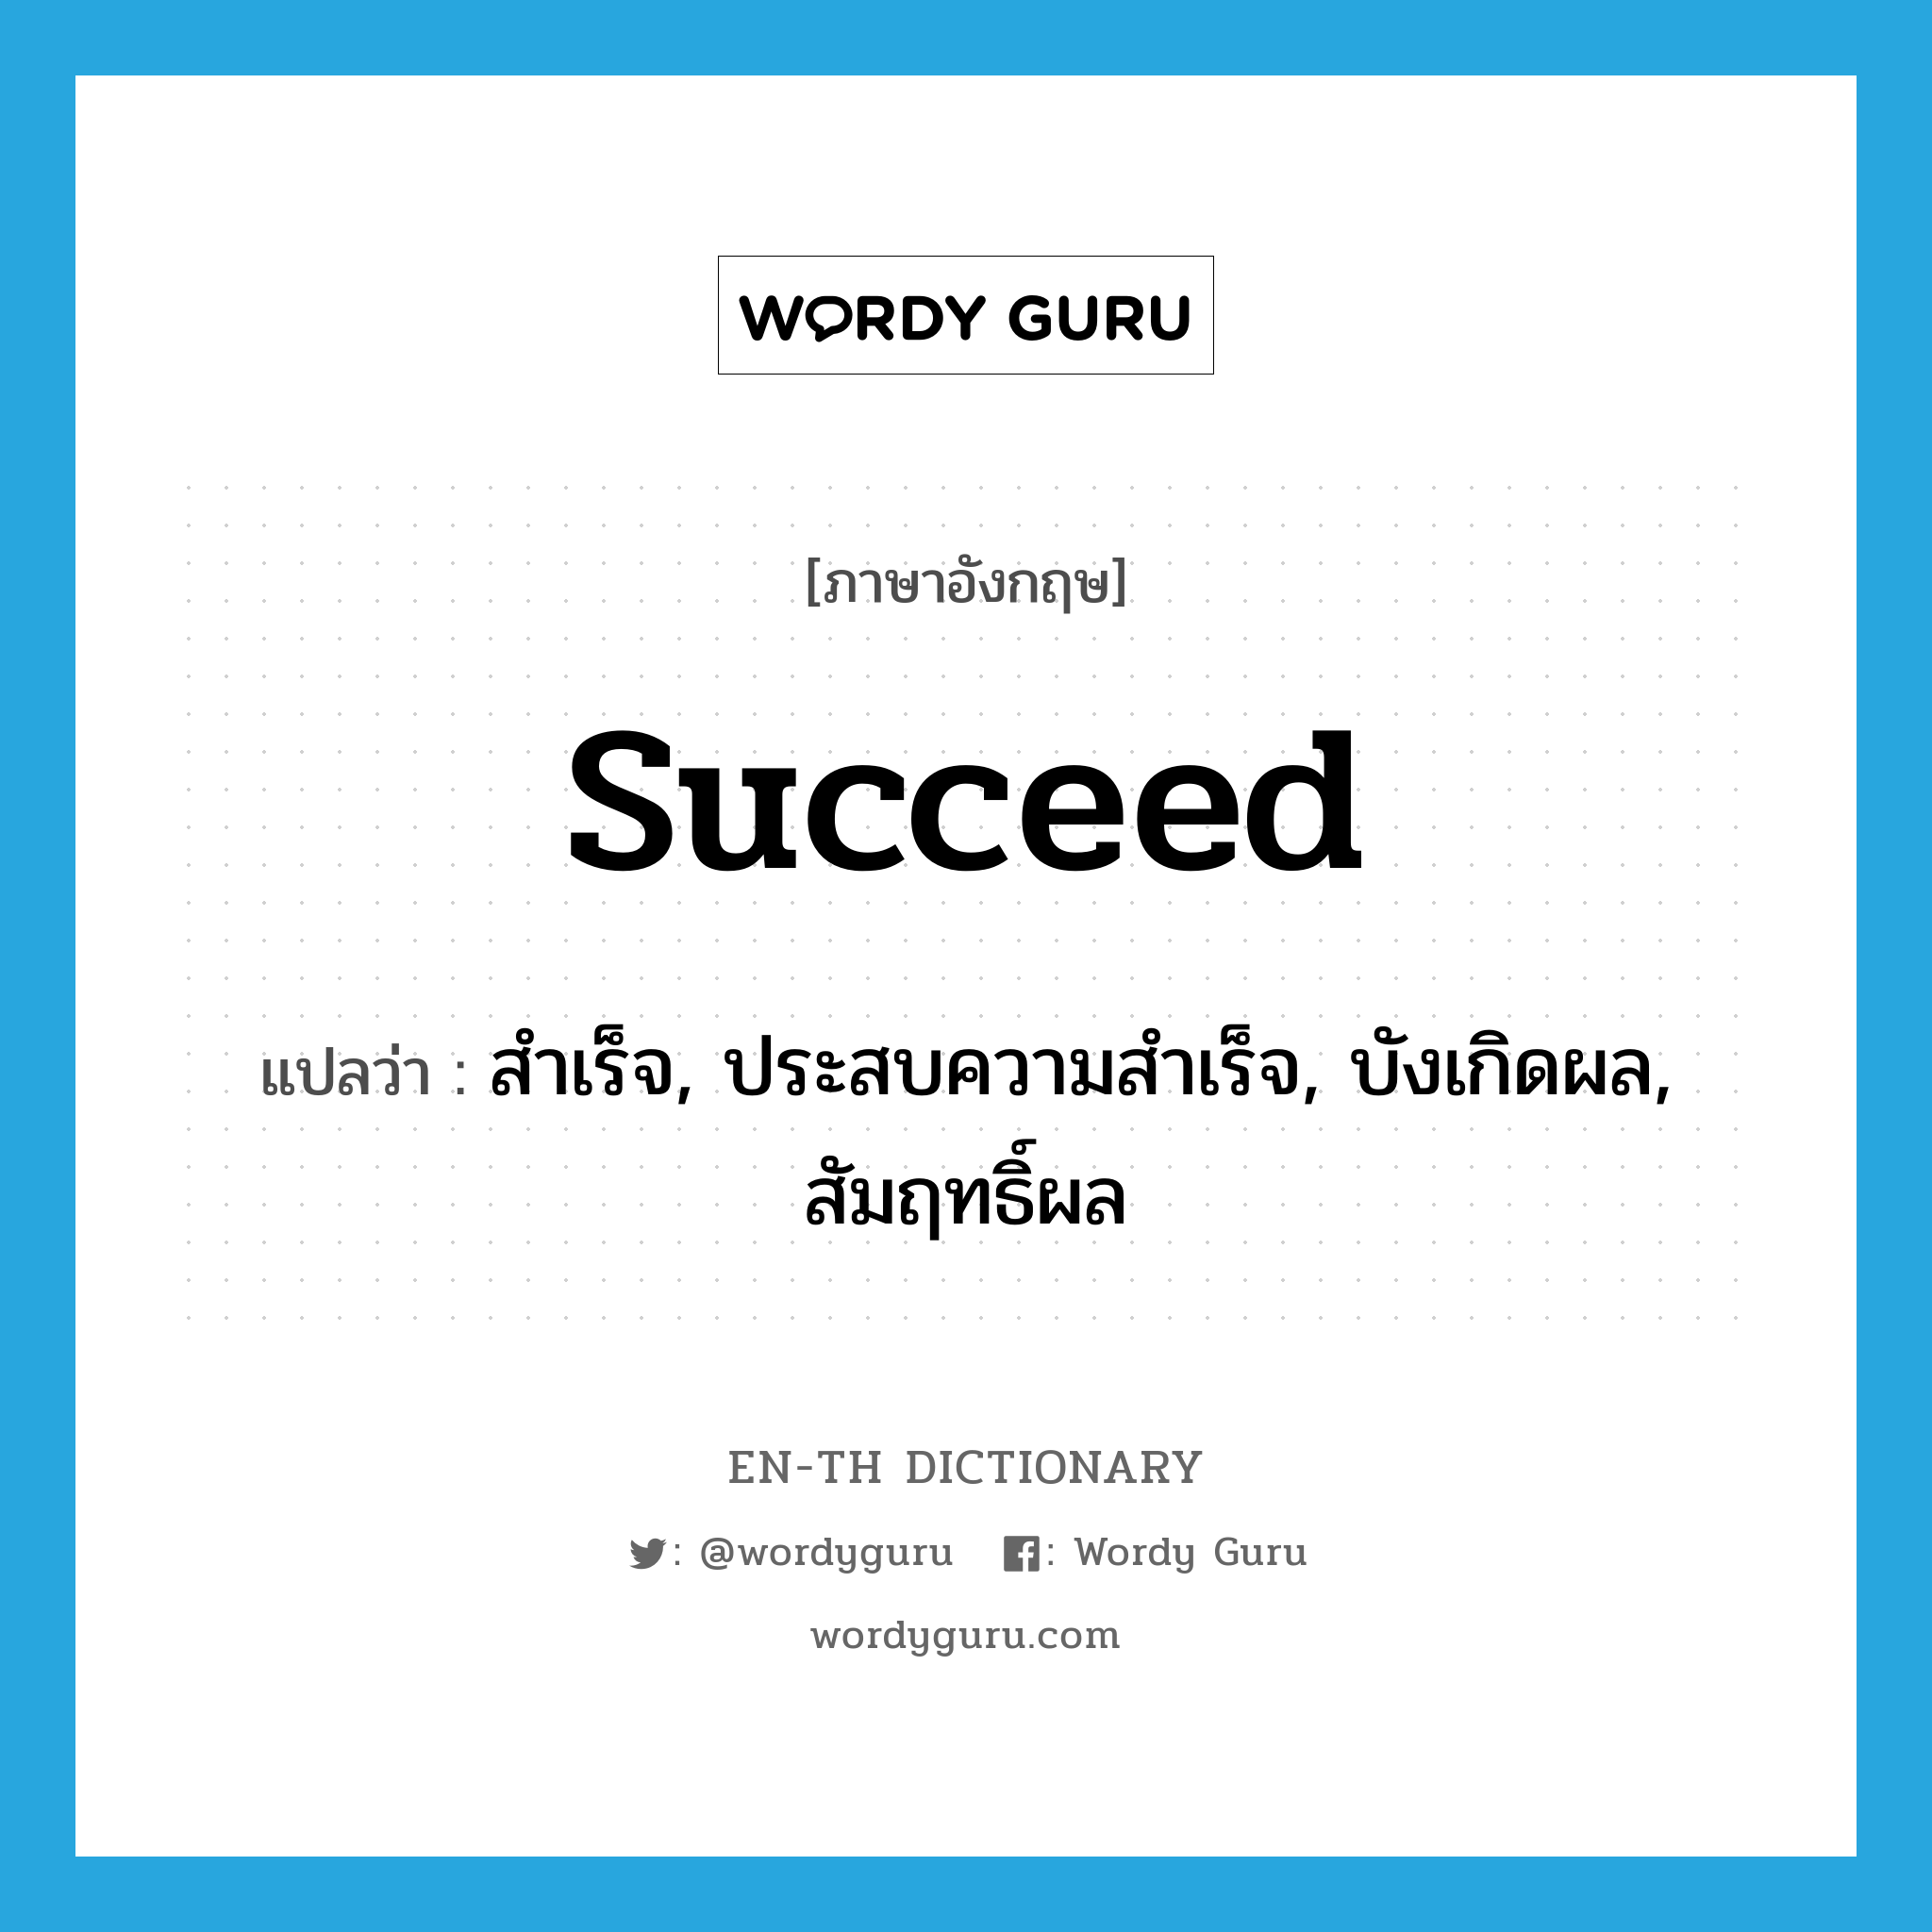 สำเร็จ, ประสบความสำเร็จ, บังเกิดผล, สัมฤทธิ์ผล ภาษาอังกฤษ?, คำศัพท์ภาษาอังกฤษ สำเร็จ, ประสบความสำเร็จ, บังเกิดผล, สัมฤทธิ์ผล แปลว่า succeed ประเภท VI หมวด VI